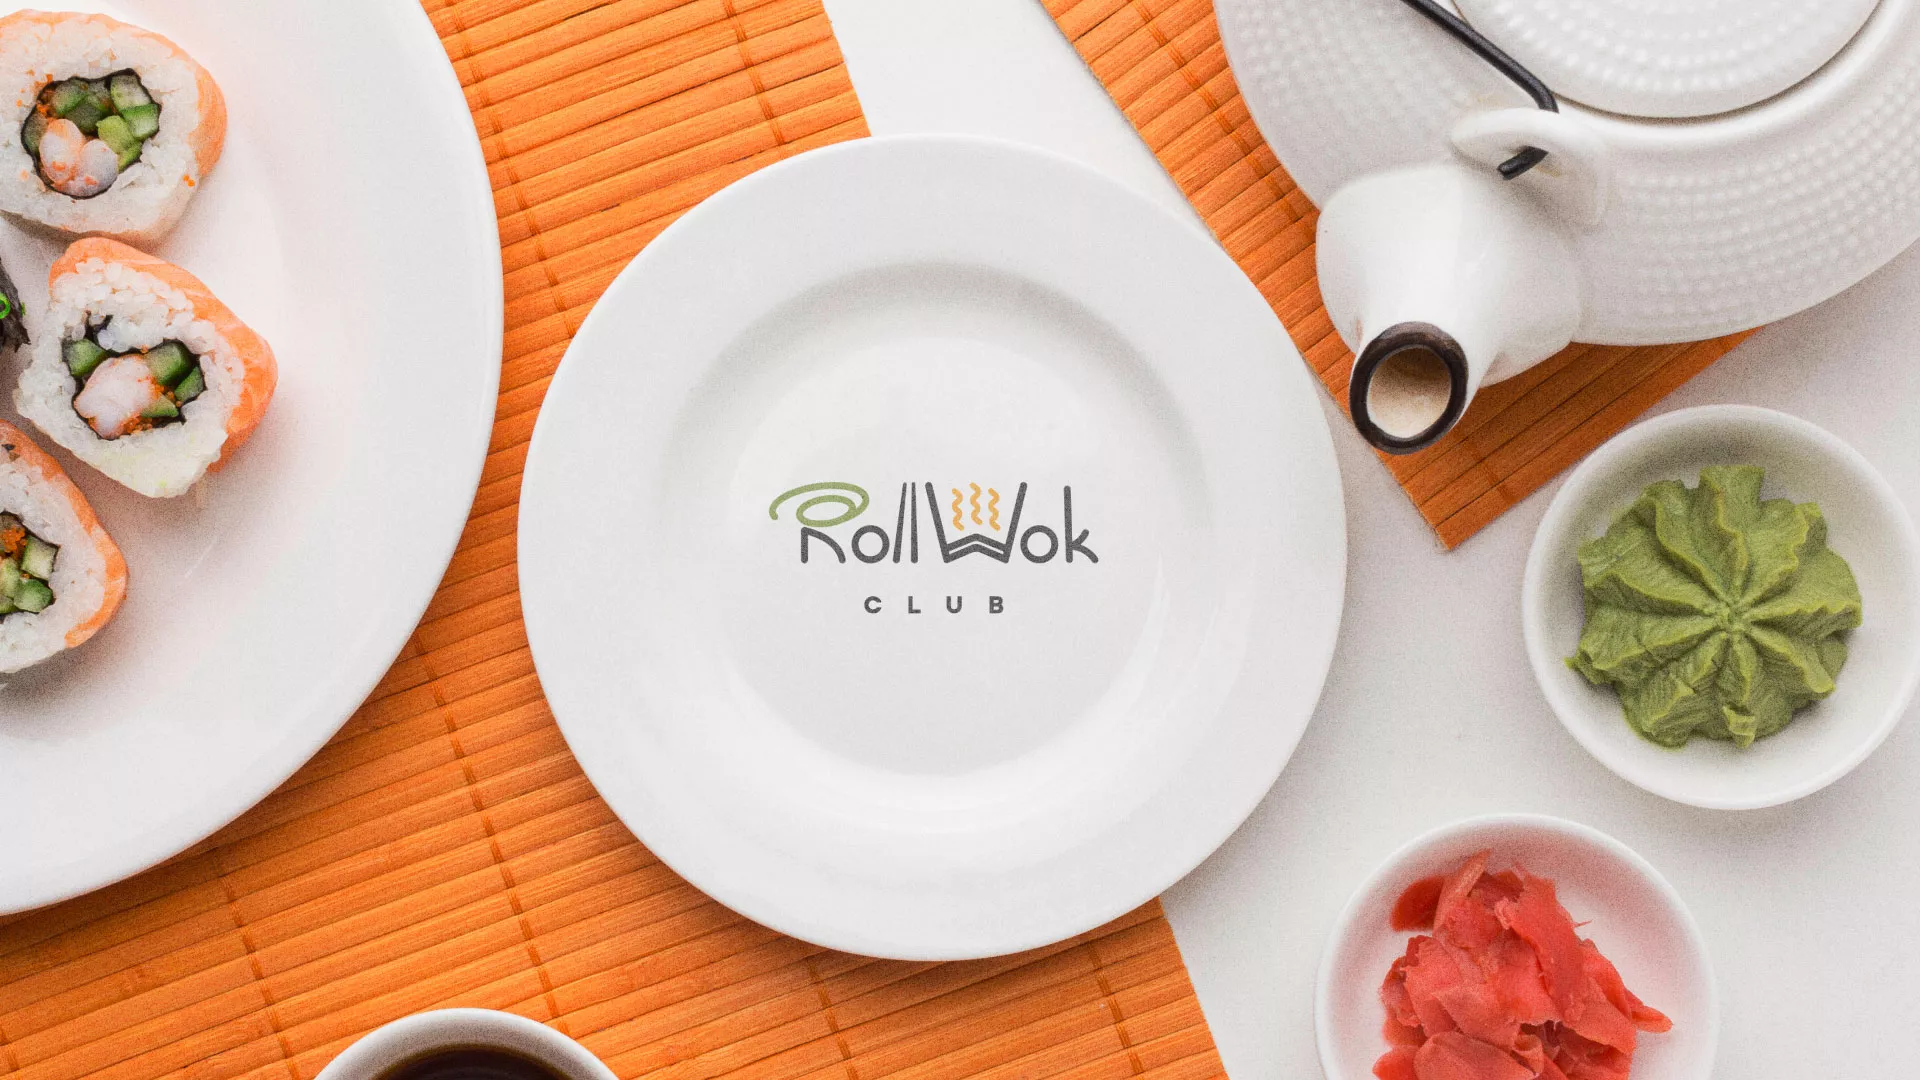 Разработка логотипа и фирменного стиля суши-бара «Roll Wok Club» в Юрьев-Польском